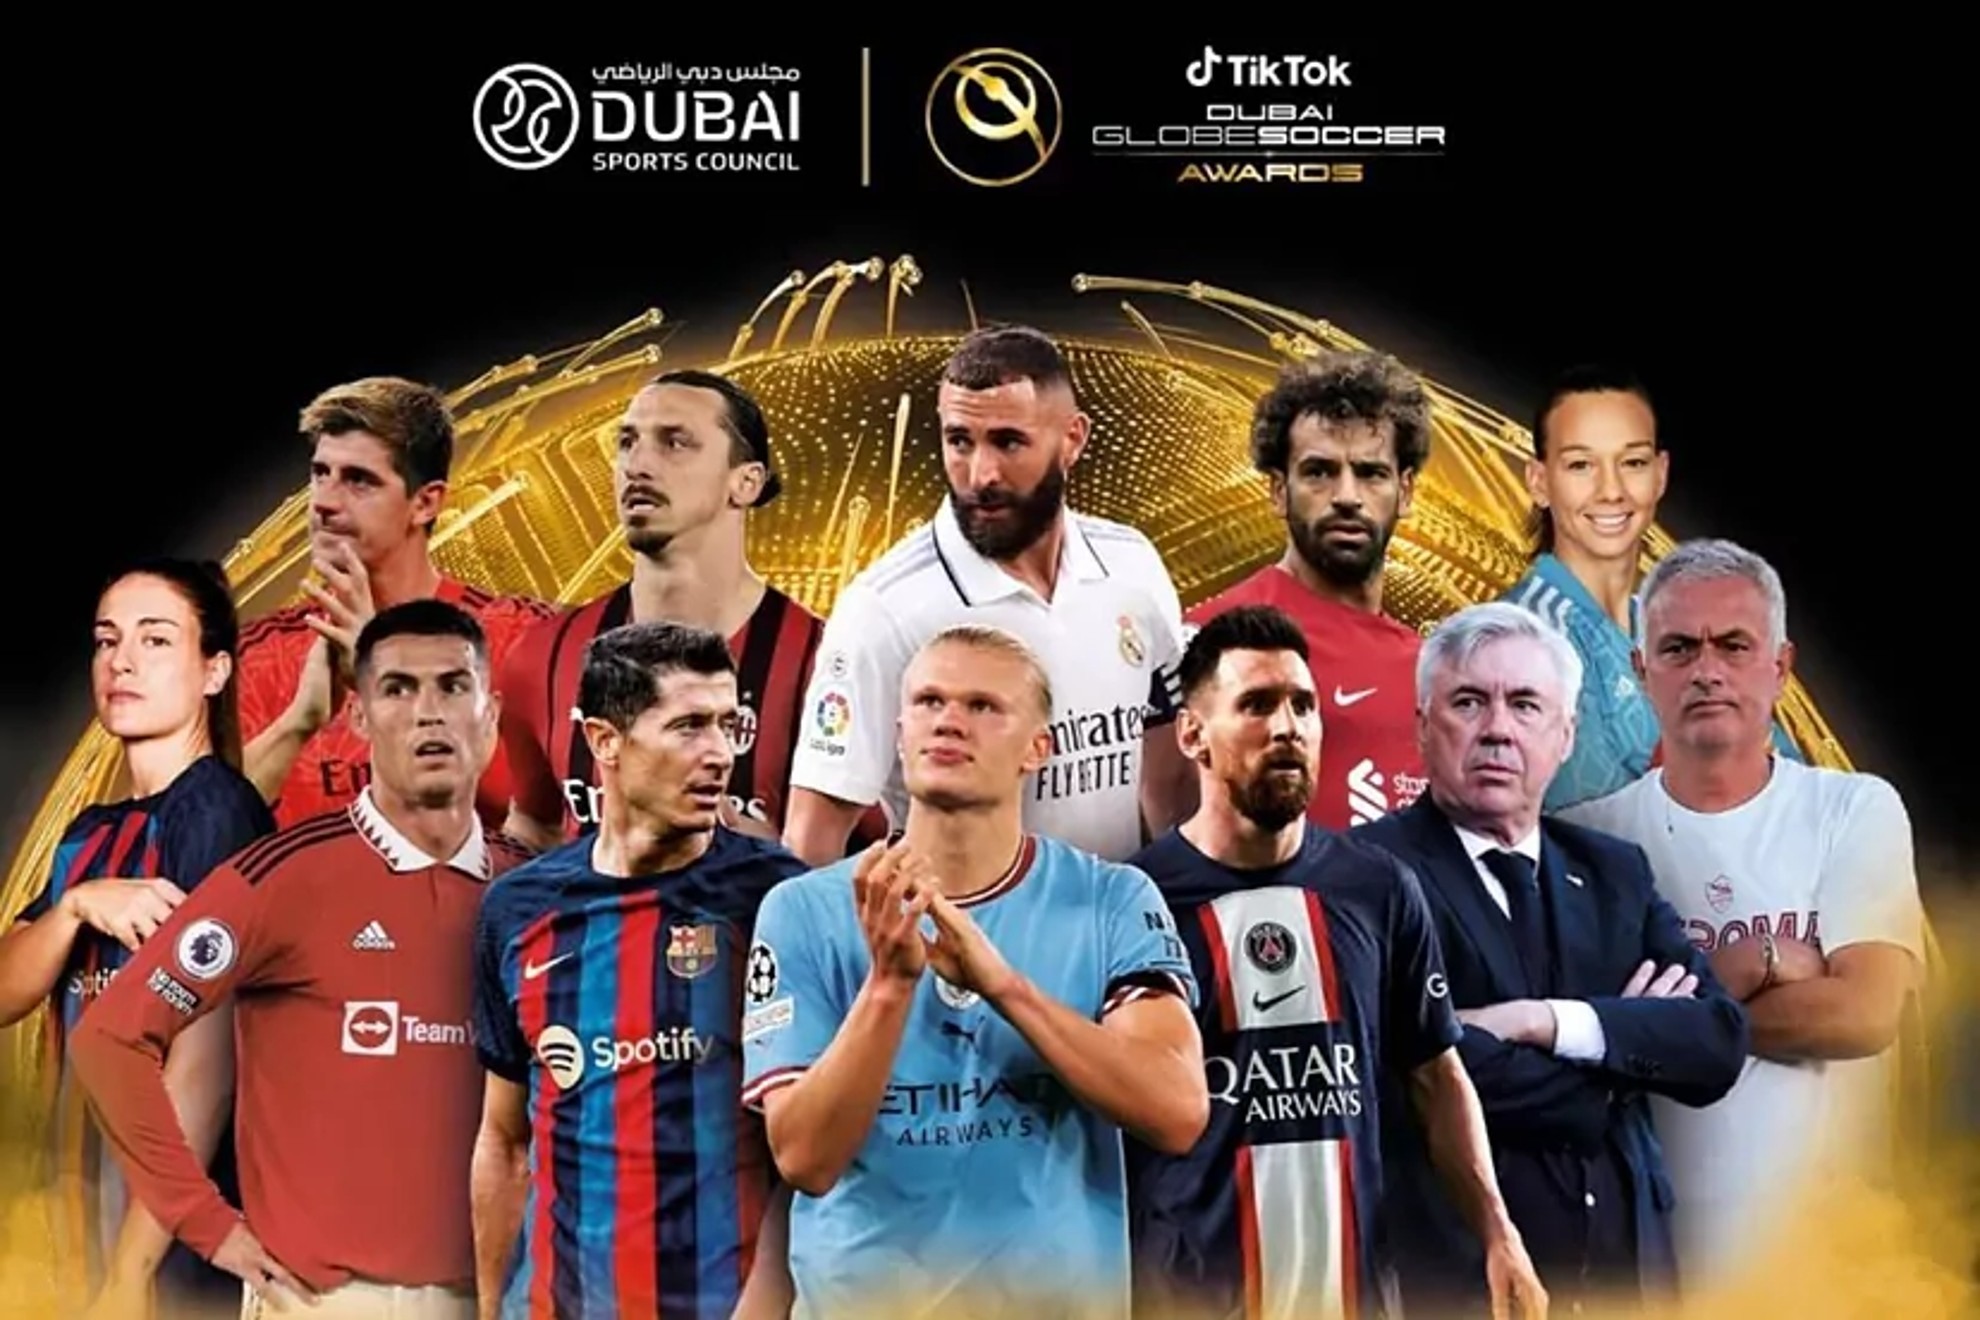 Globe Soccer Awards 2022 Nominados, ganadores, fecha y gala